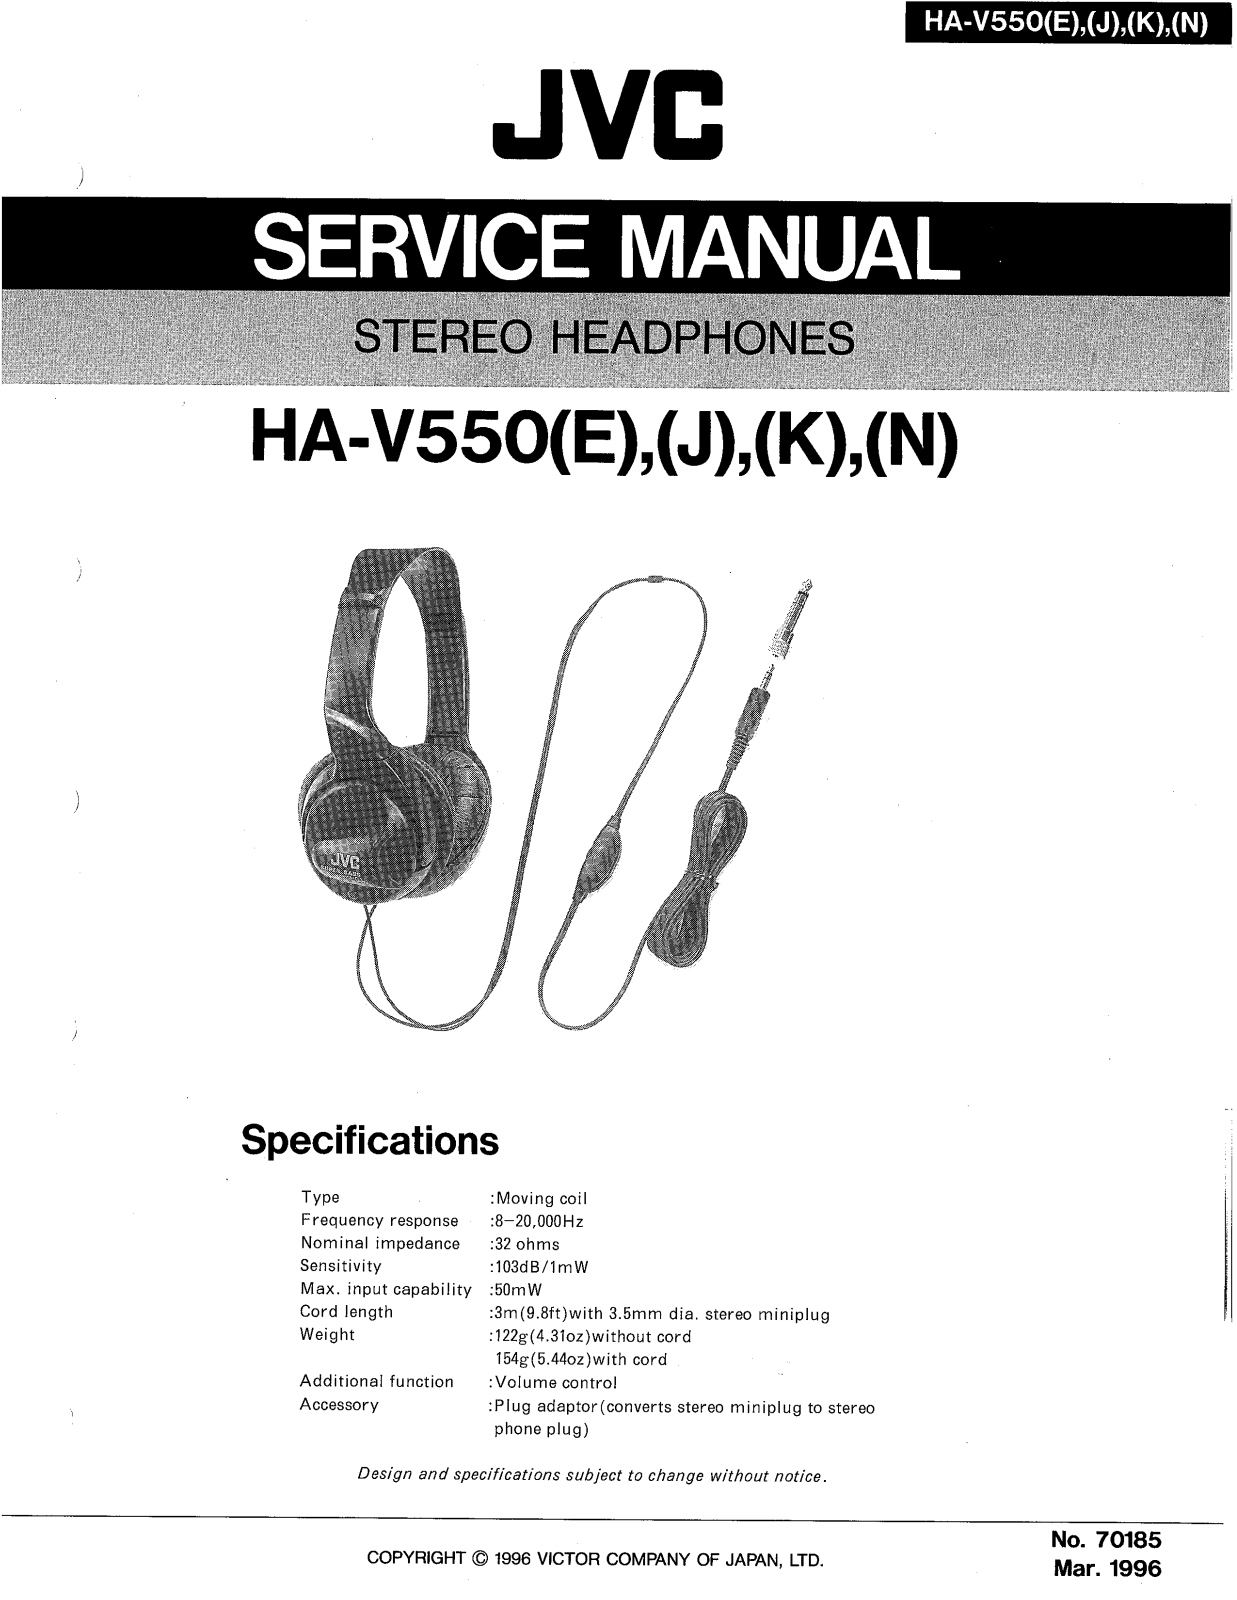 JVC HA-V550(E), HA-V550(J), HA-V550(K), HA-V550(N) Service Manual